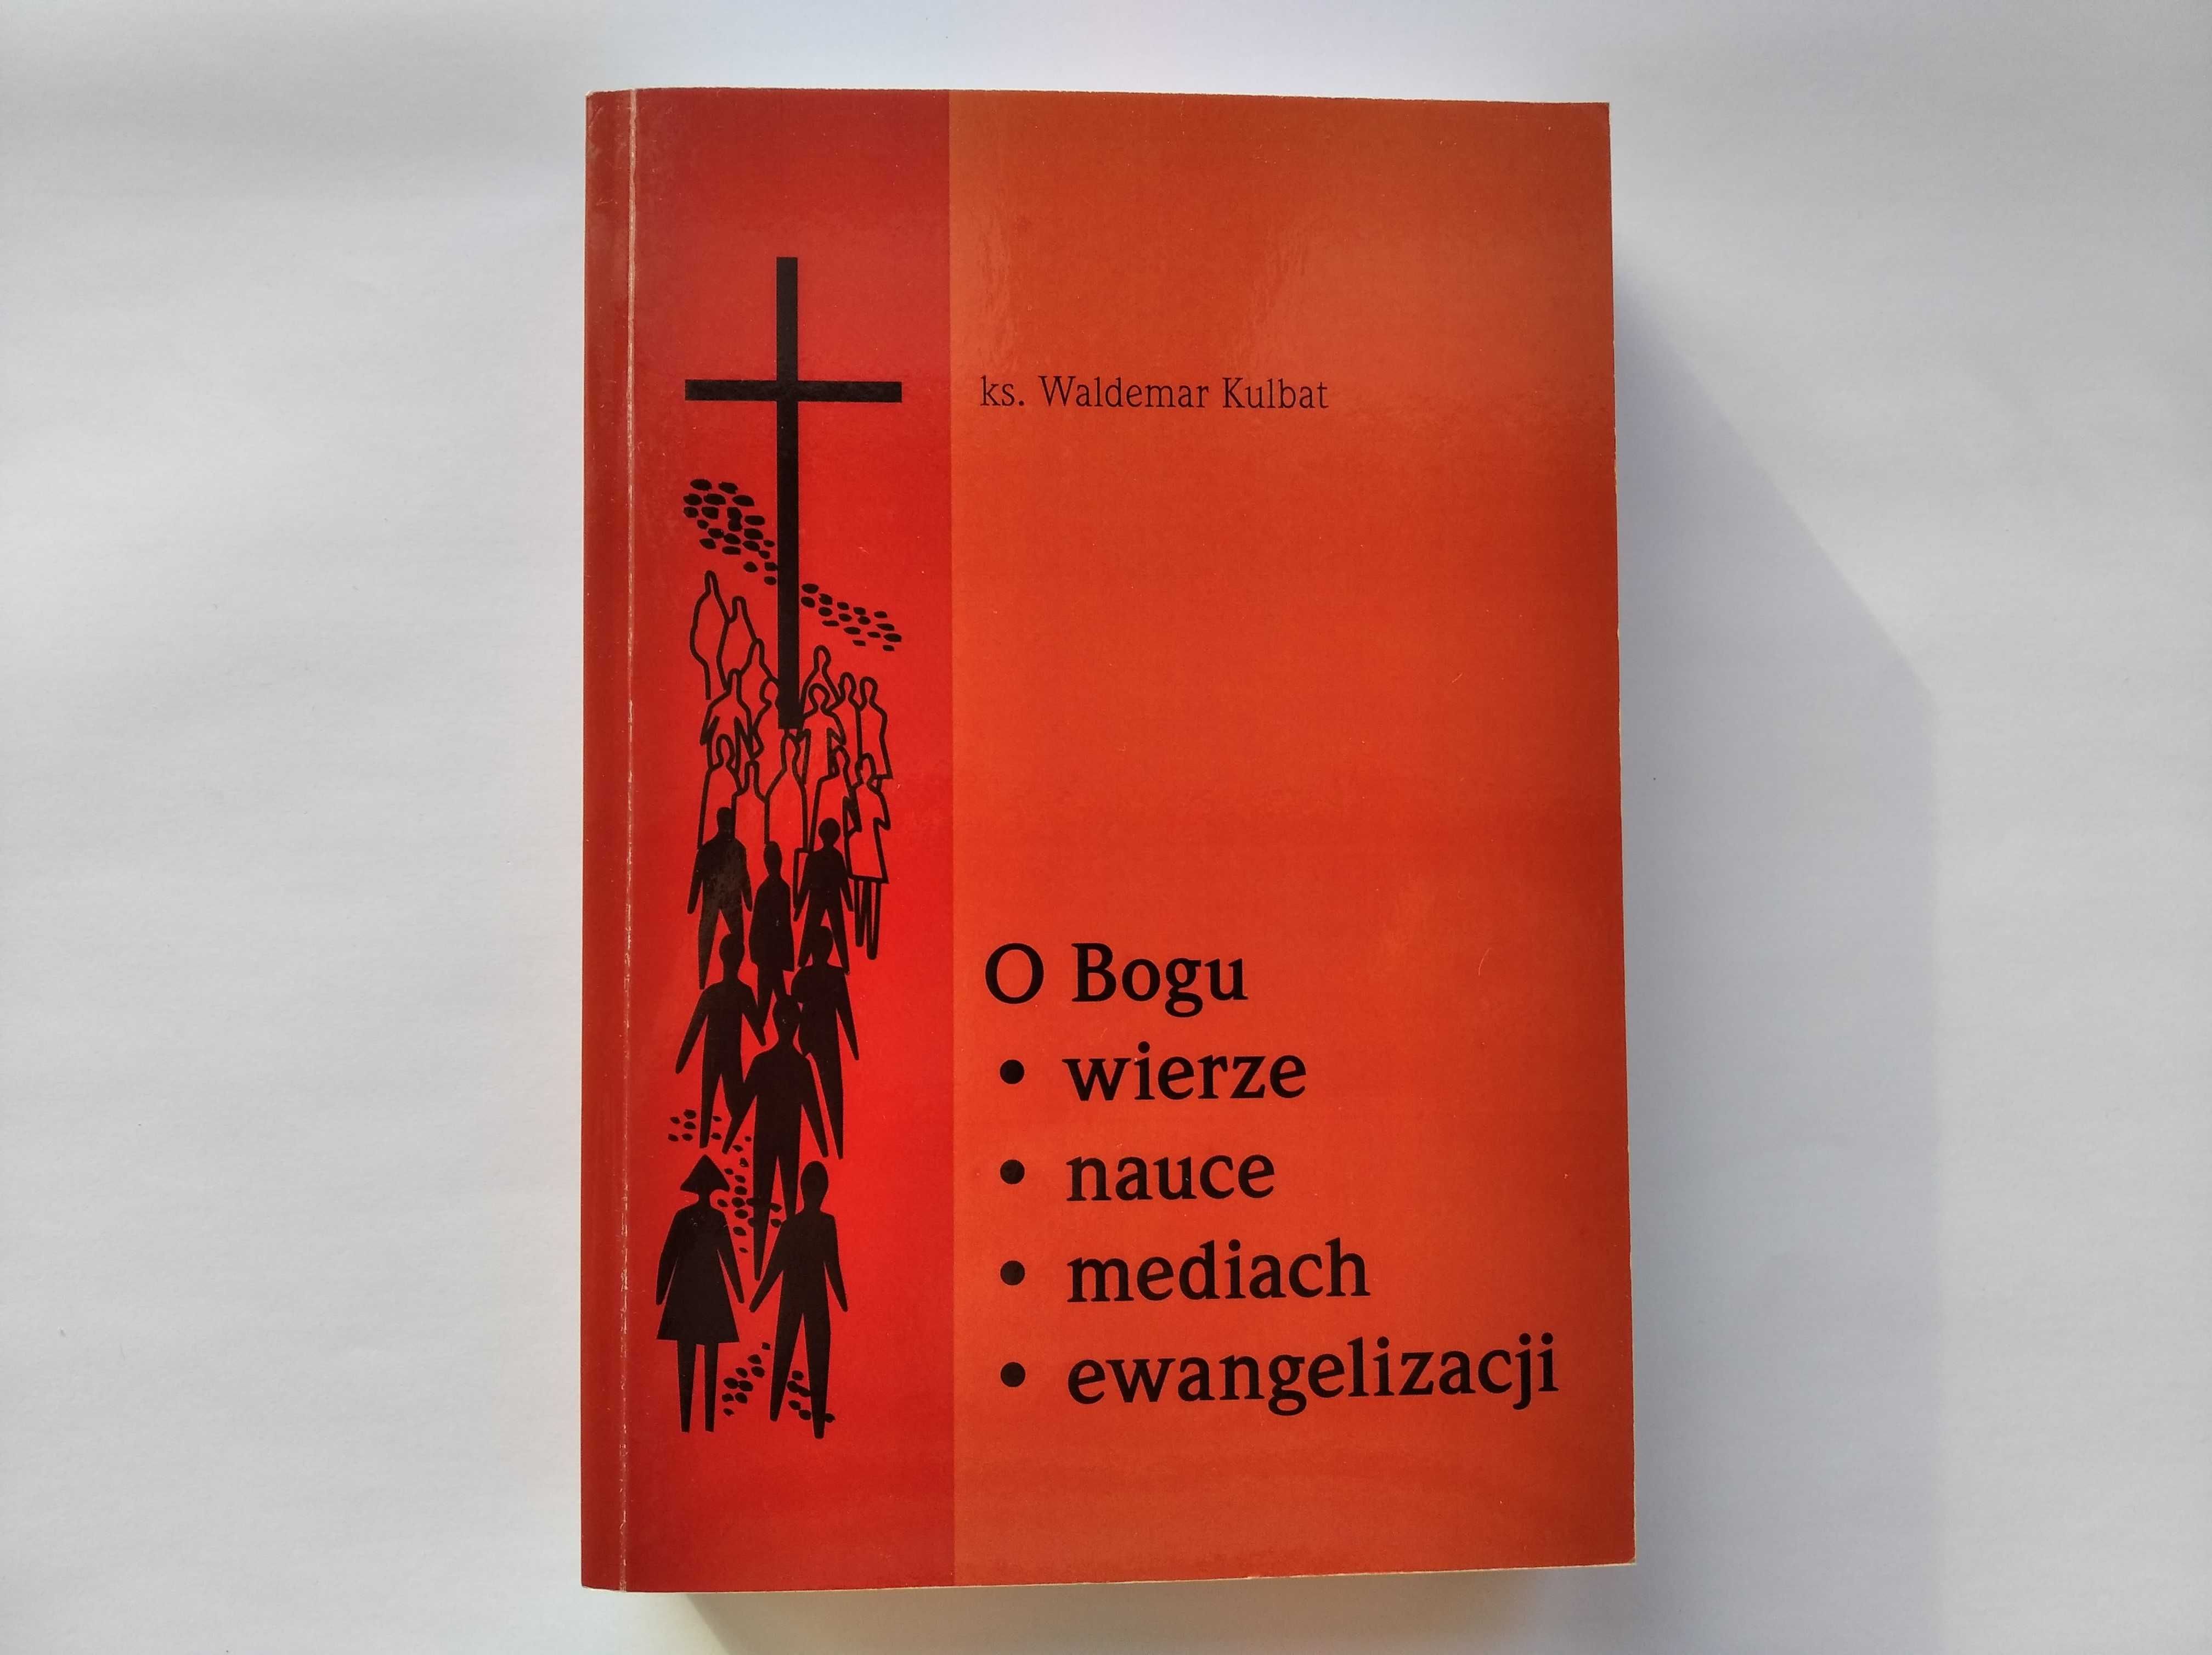 ks. W. Kulbat "O Bogu wierze nauce mediach ewangelizacji"